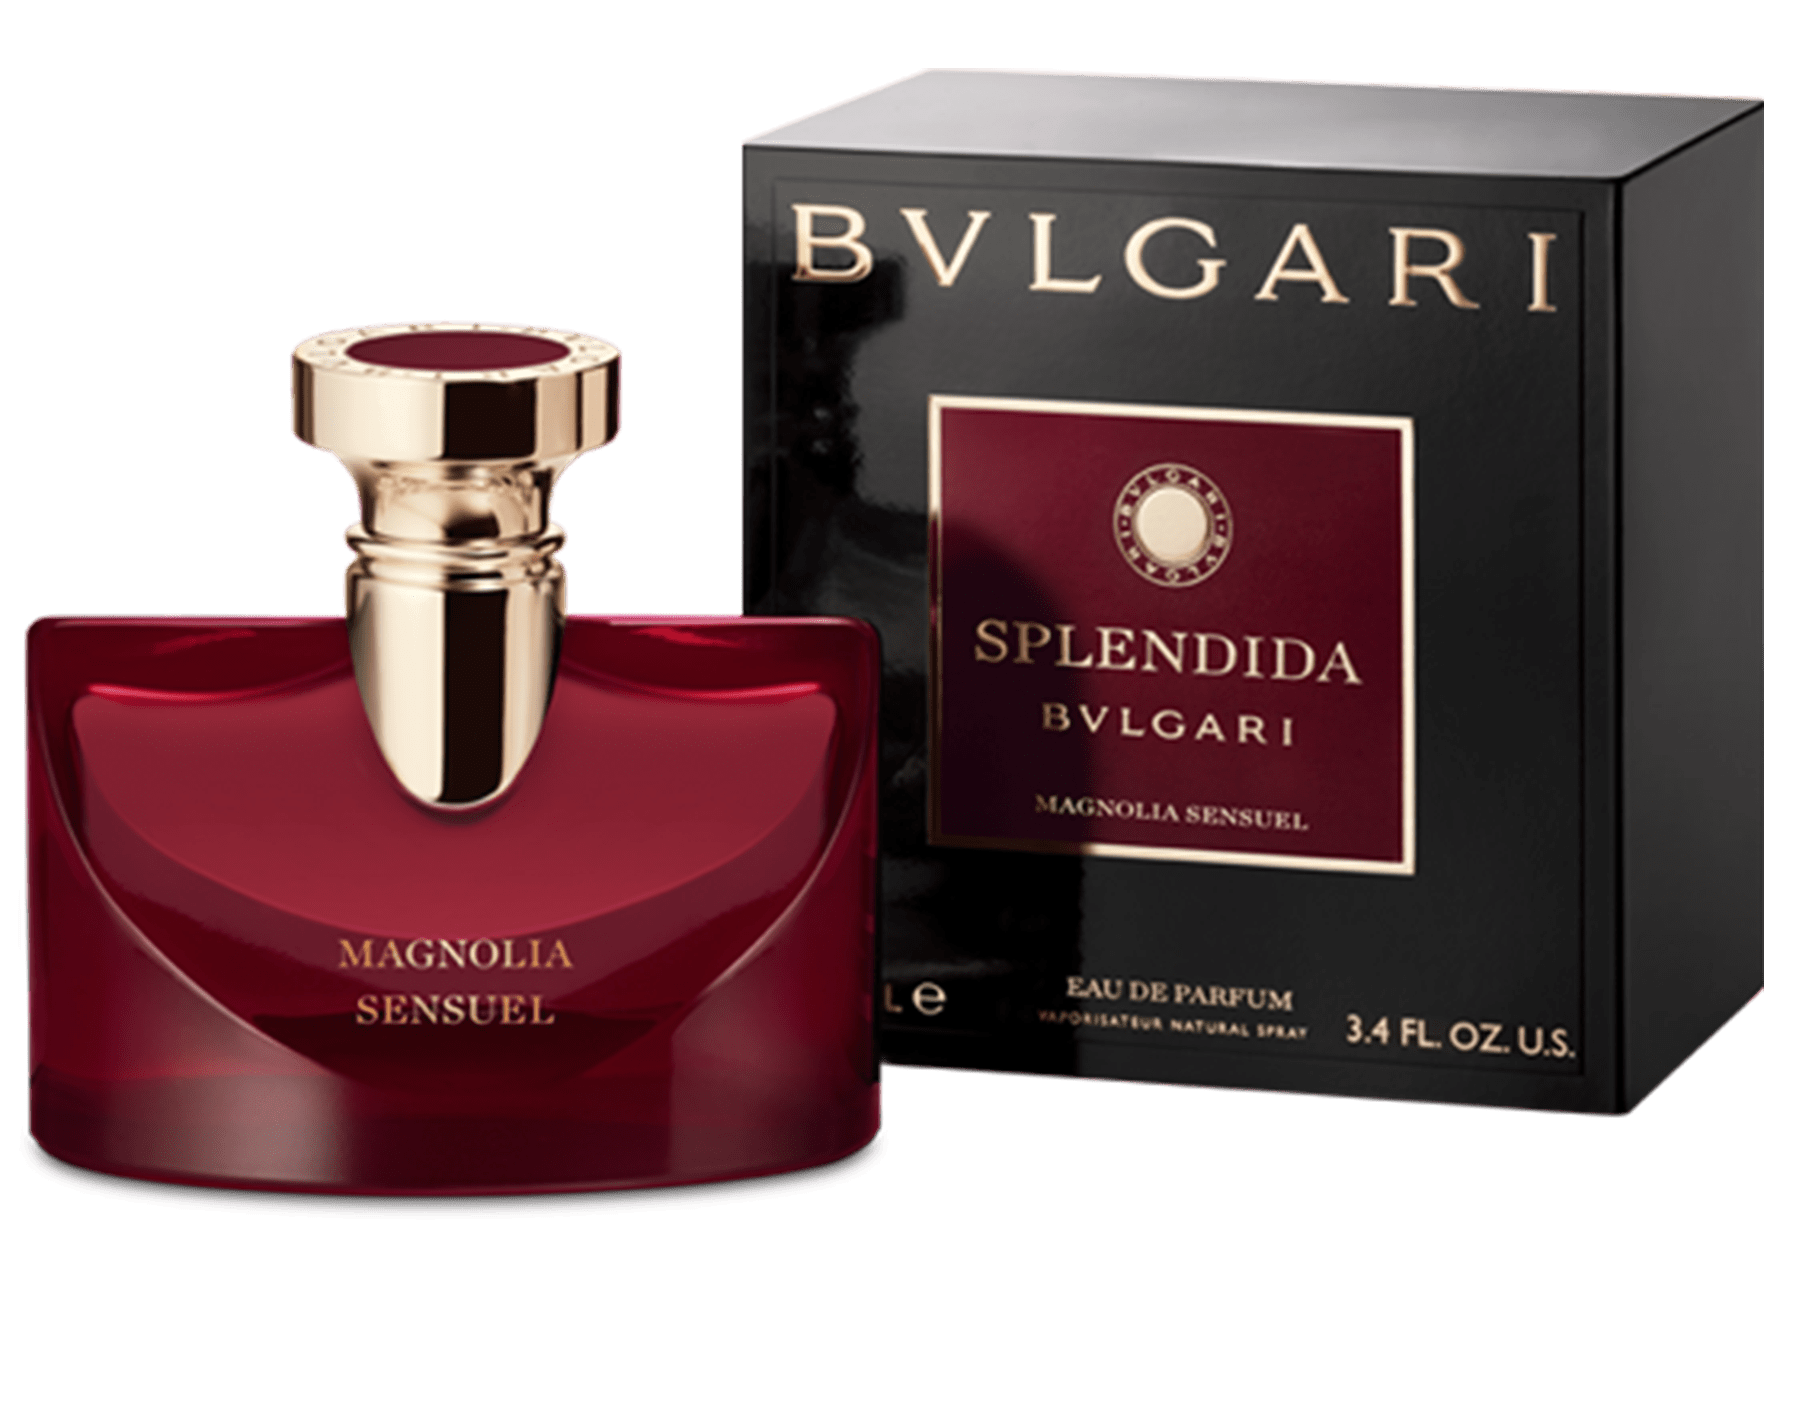 Bvlgari Splendida Magnolia Sensuel For Women Eau De Parfum 100ML